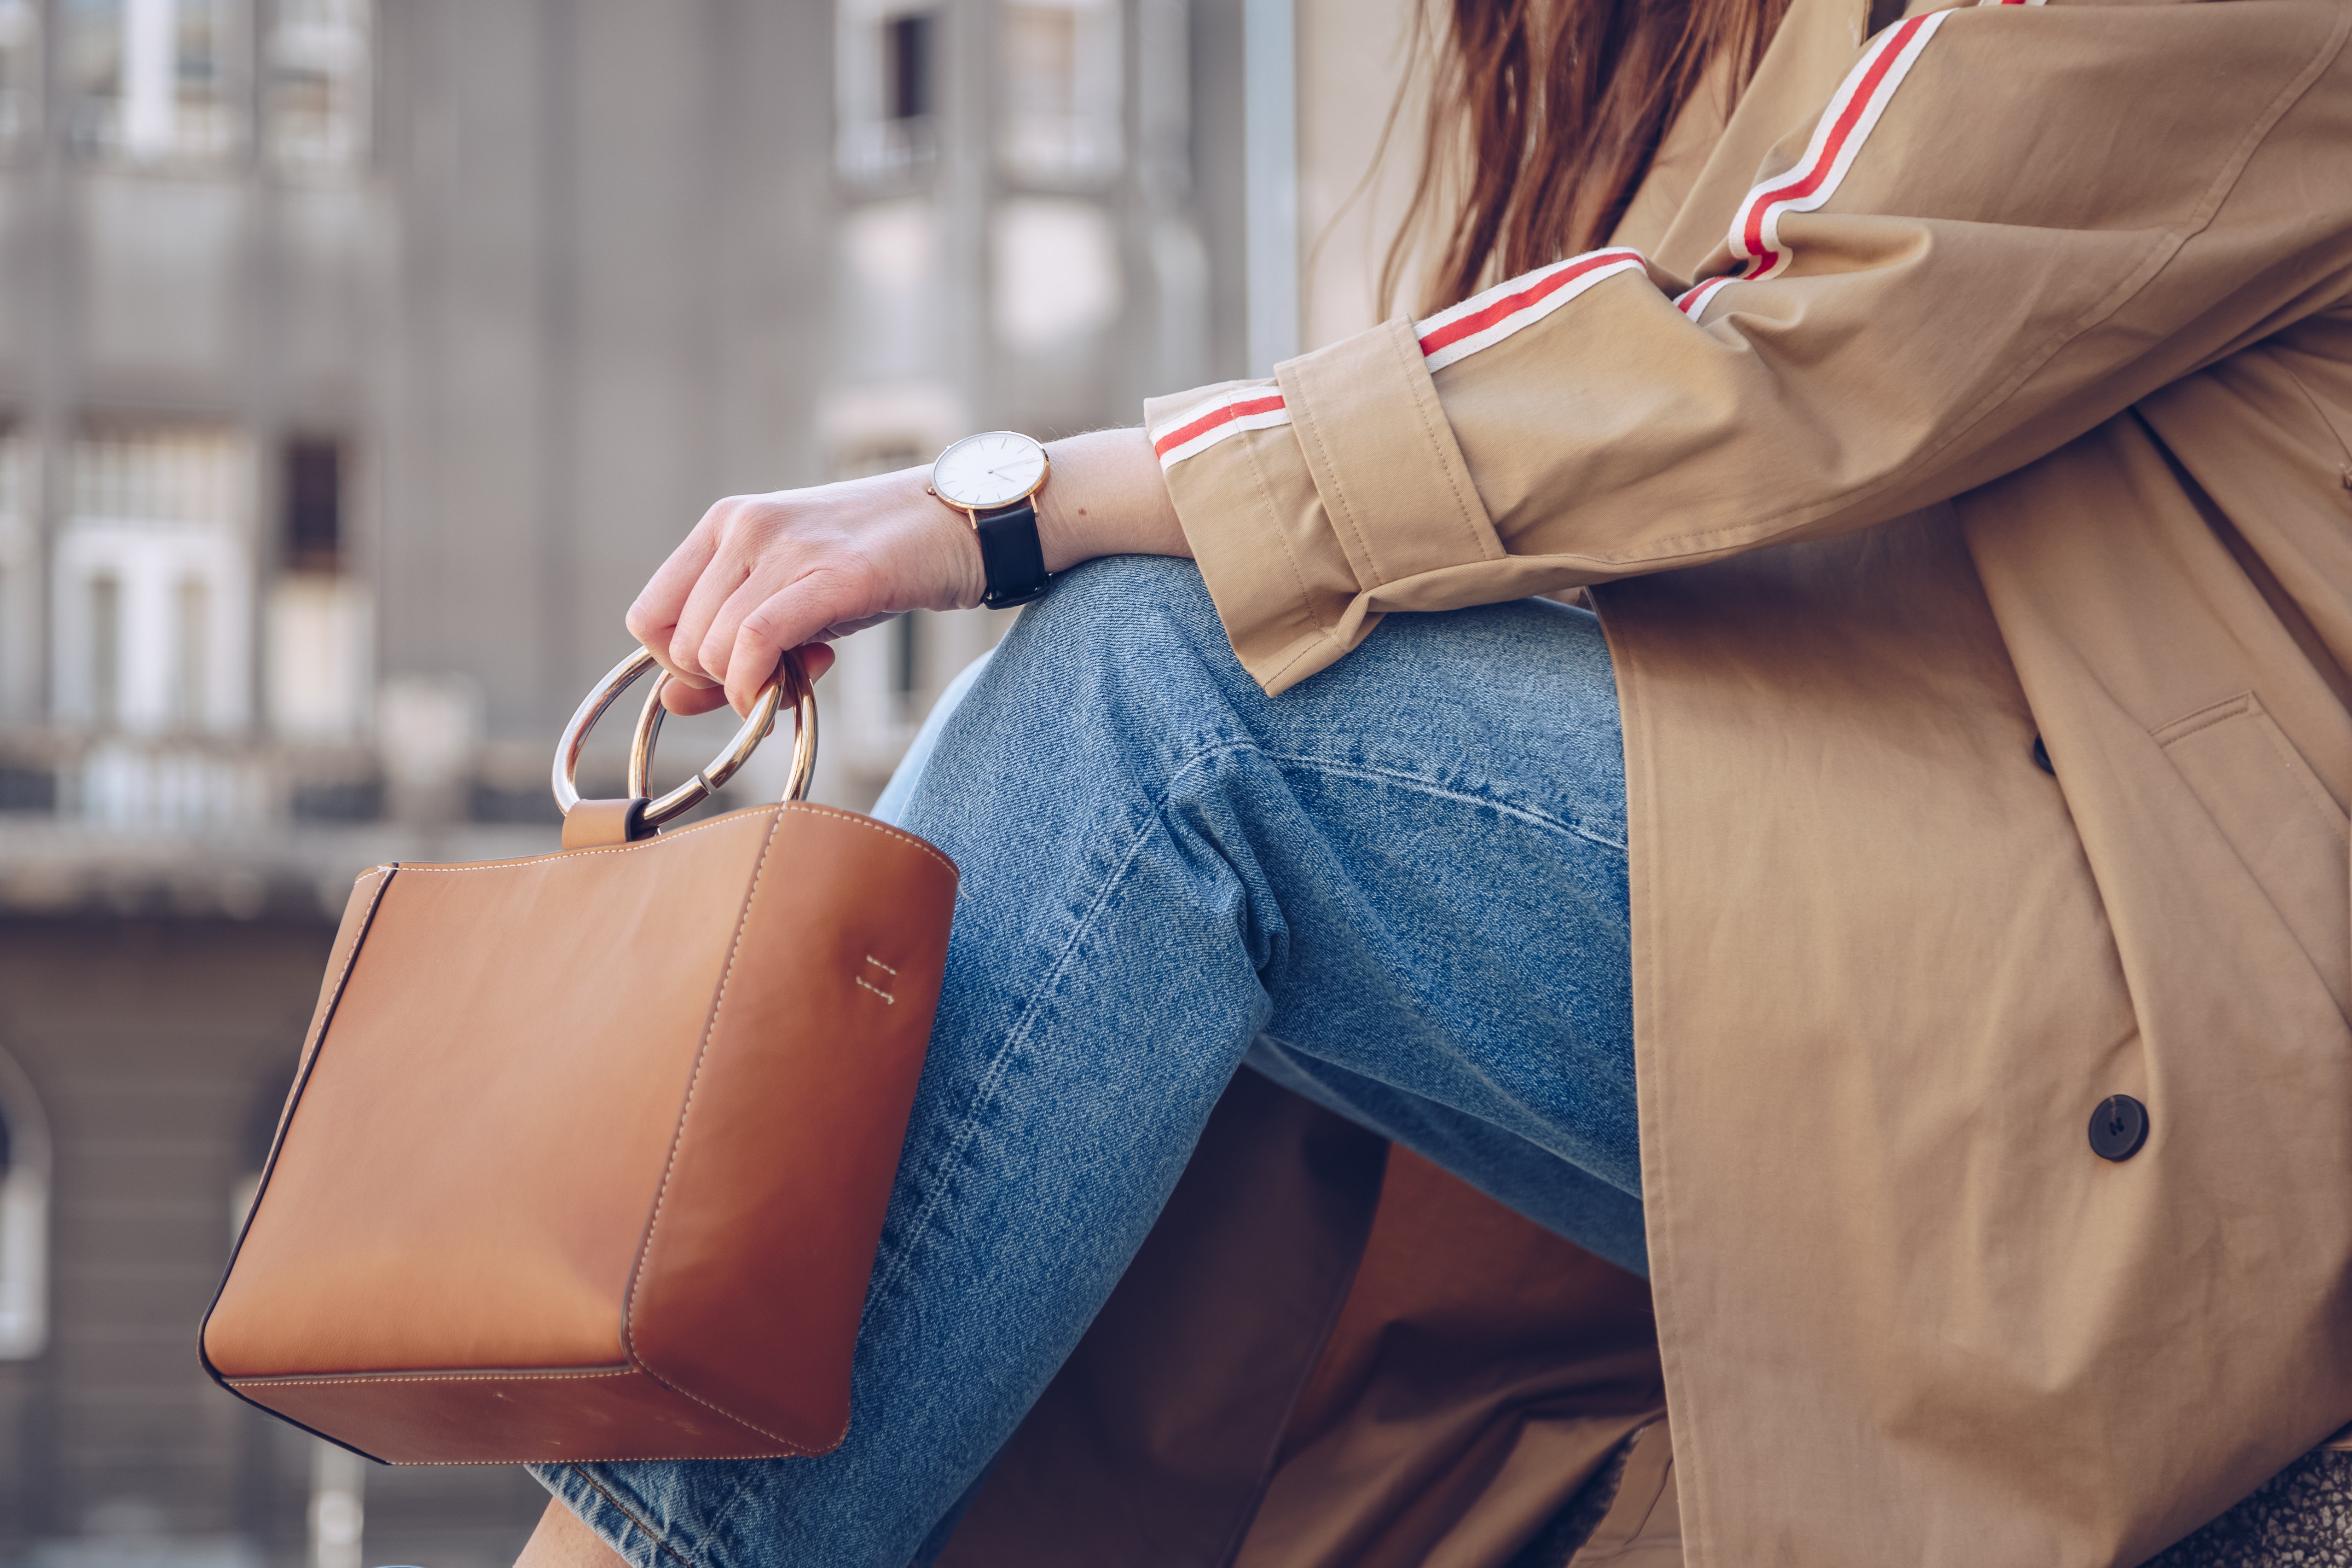 détails du style de rue. femme séduisante portant un manteau de tranchée beige, jeans denim, bottes de cheville, montre et sac en cuir à poignée métallique. tenue de mode parfaite pour un printemps ensoleillé | Photo : Shutterstock